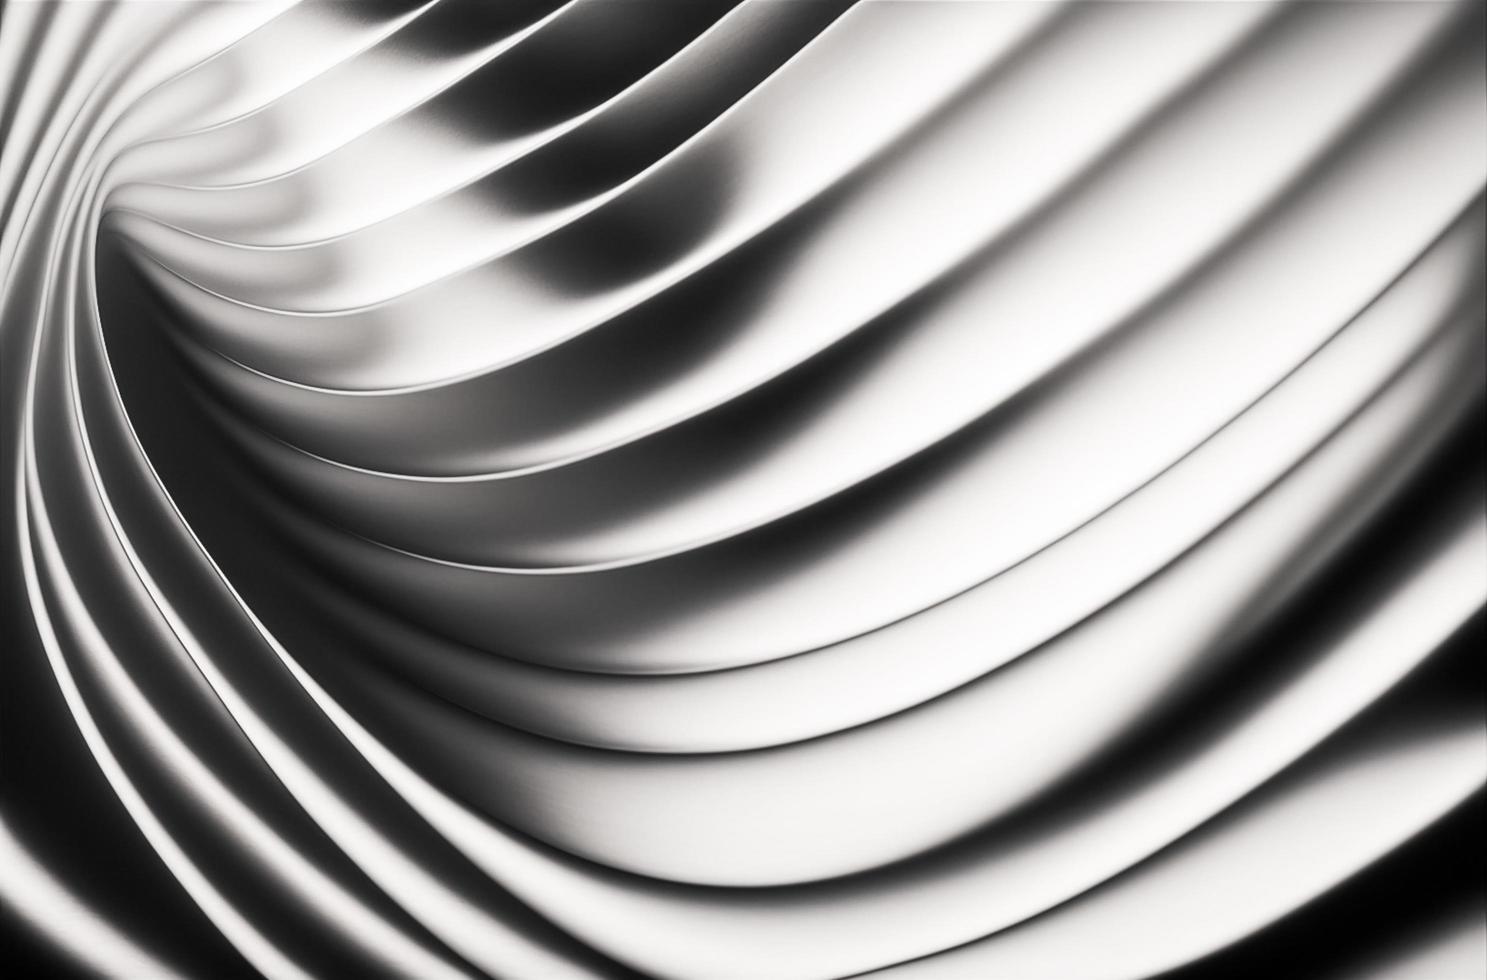 abstract chroom Golf kromme modern Aan een luxe zilver achtergrond foto